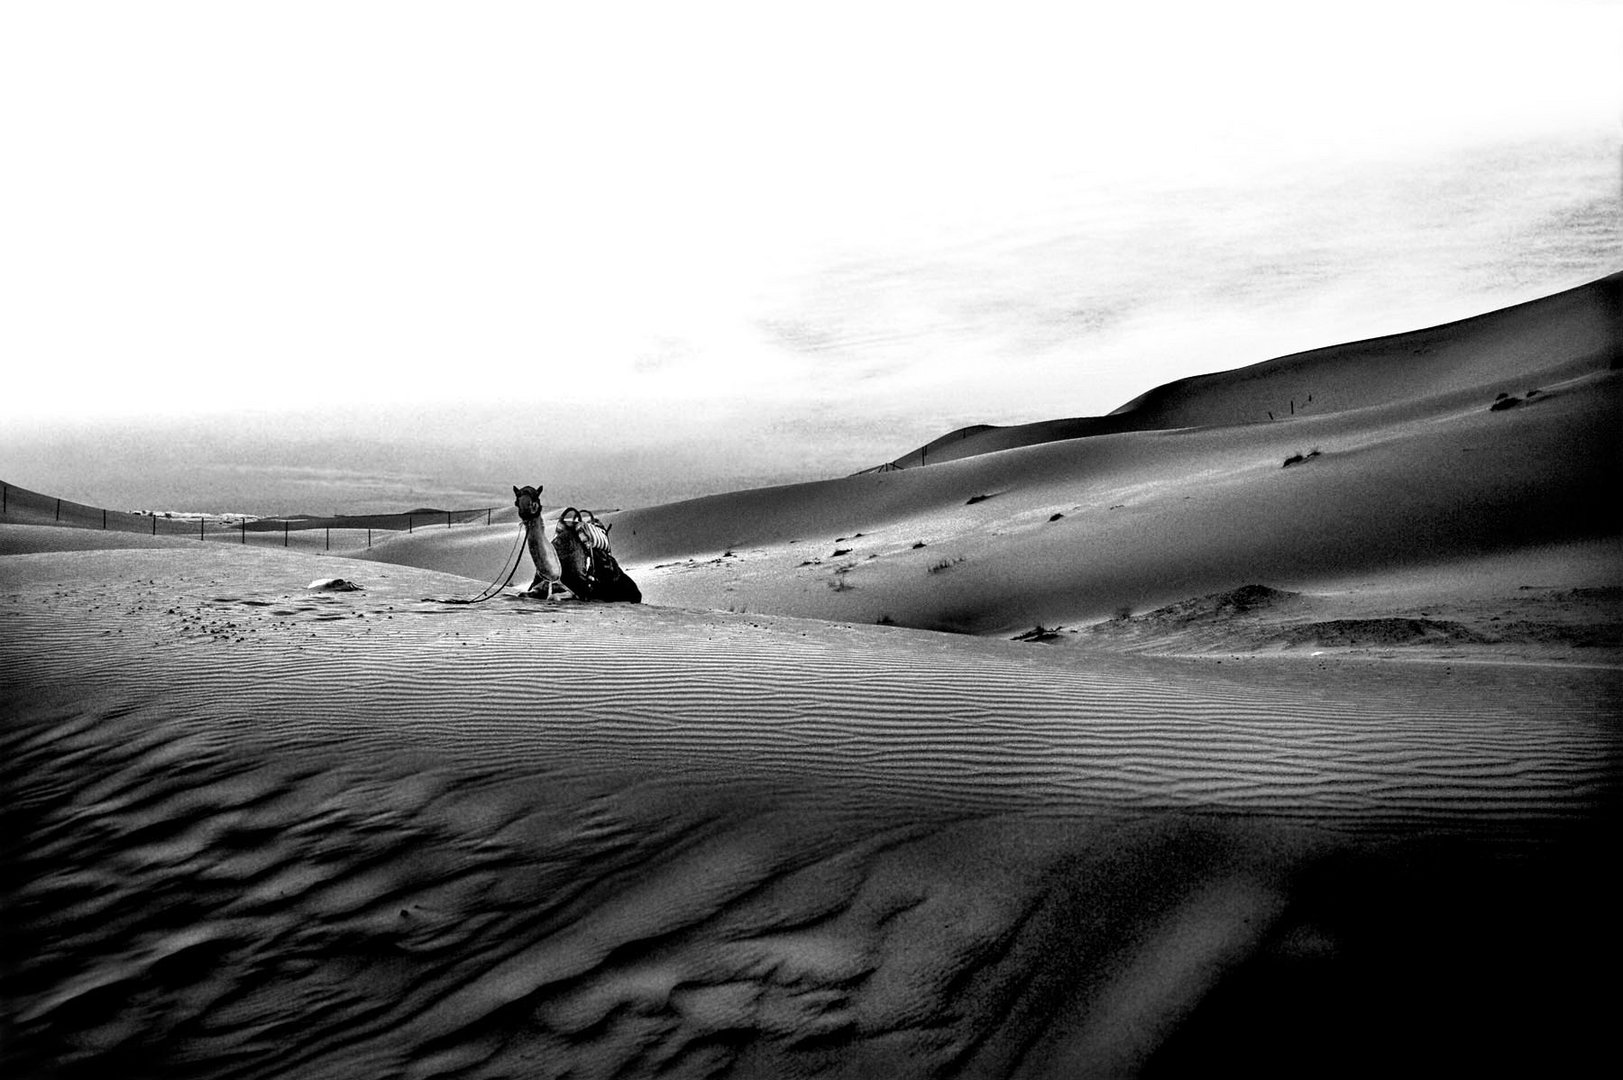 The Arabia desert 2